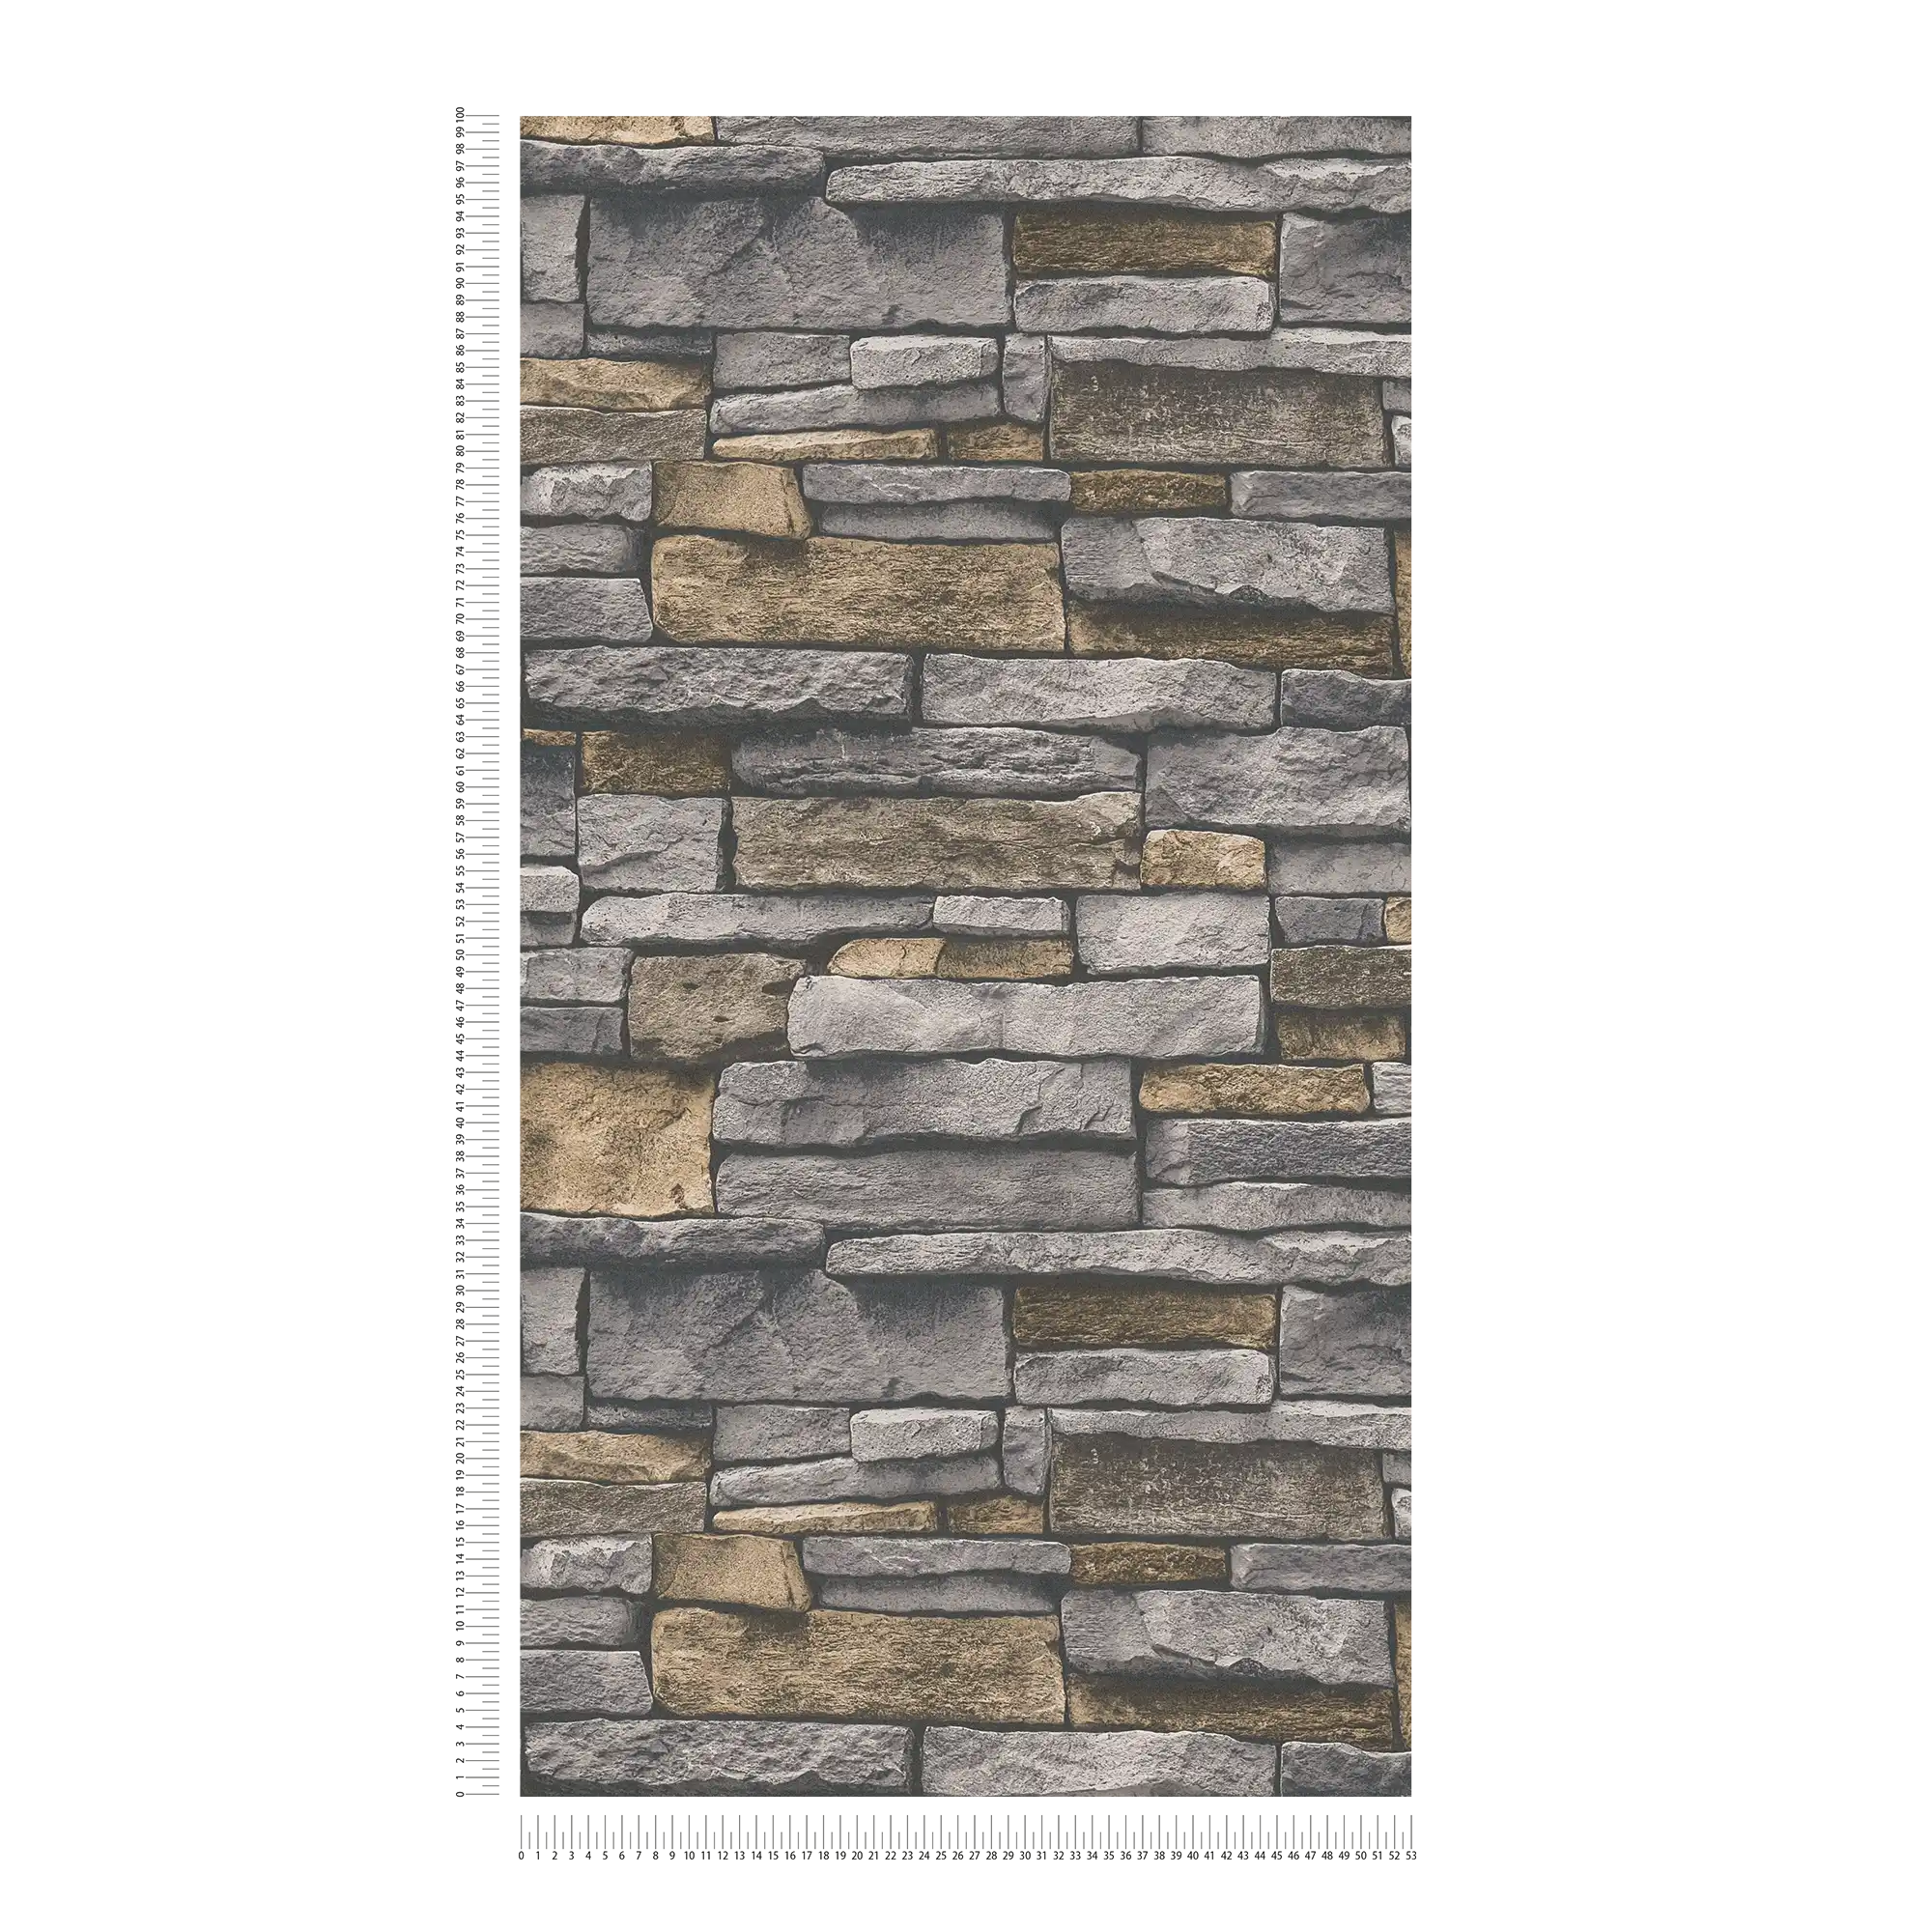             Carta da parati in tessuto non tessuto effetto pietra con parete in pietra naturale - grigio, beige
        